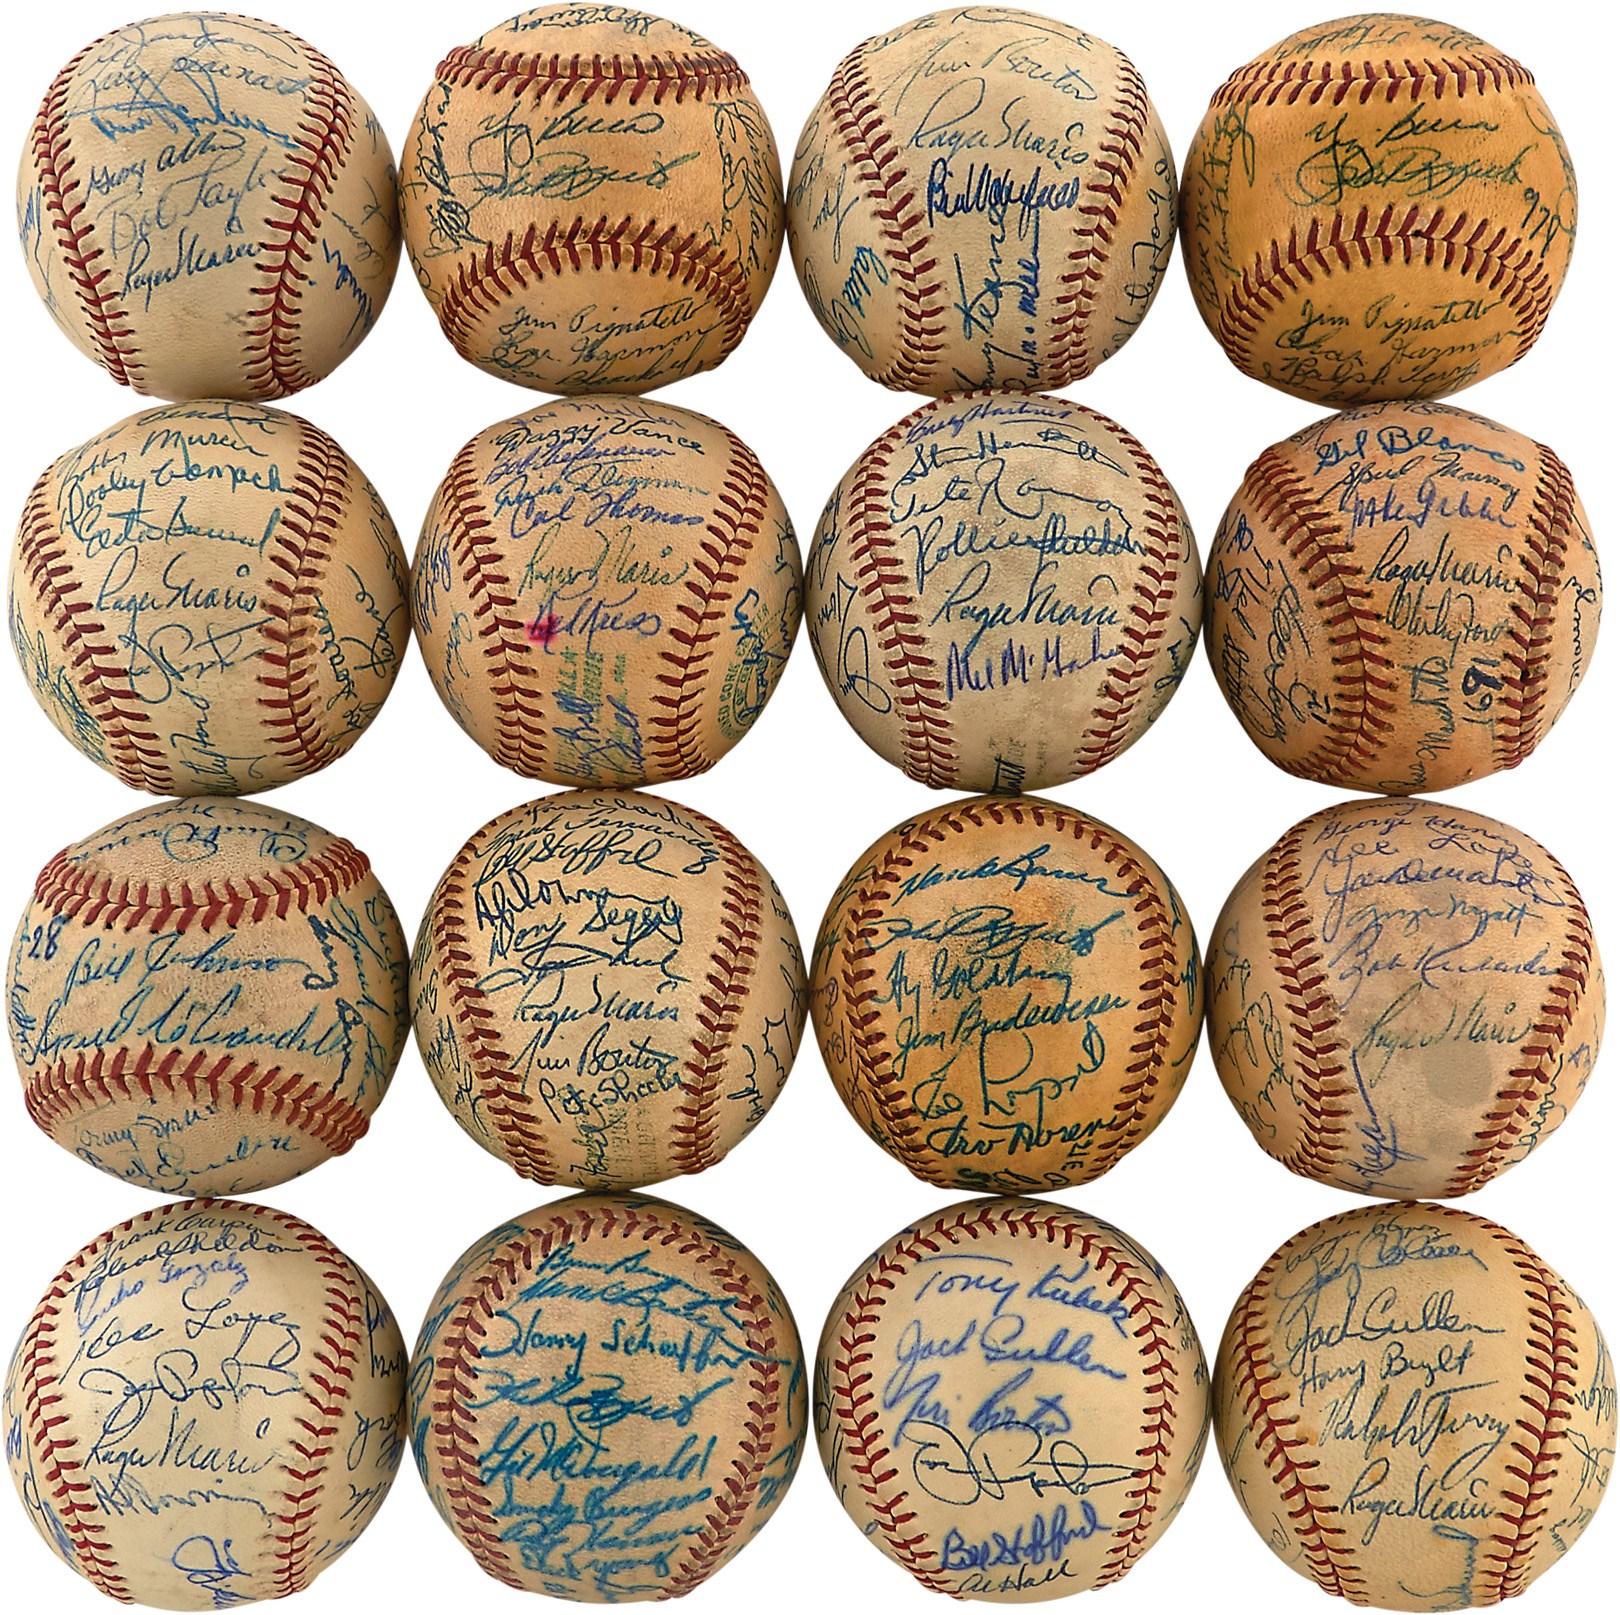 Incredible 1947-67 New York Yankees Team-Signed Baseballs